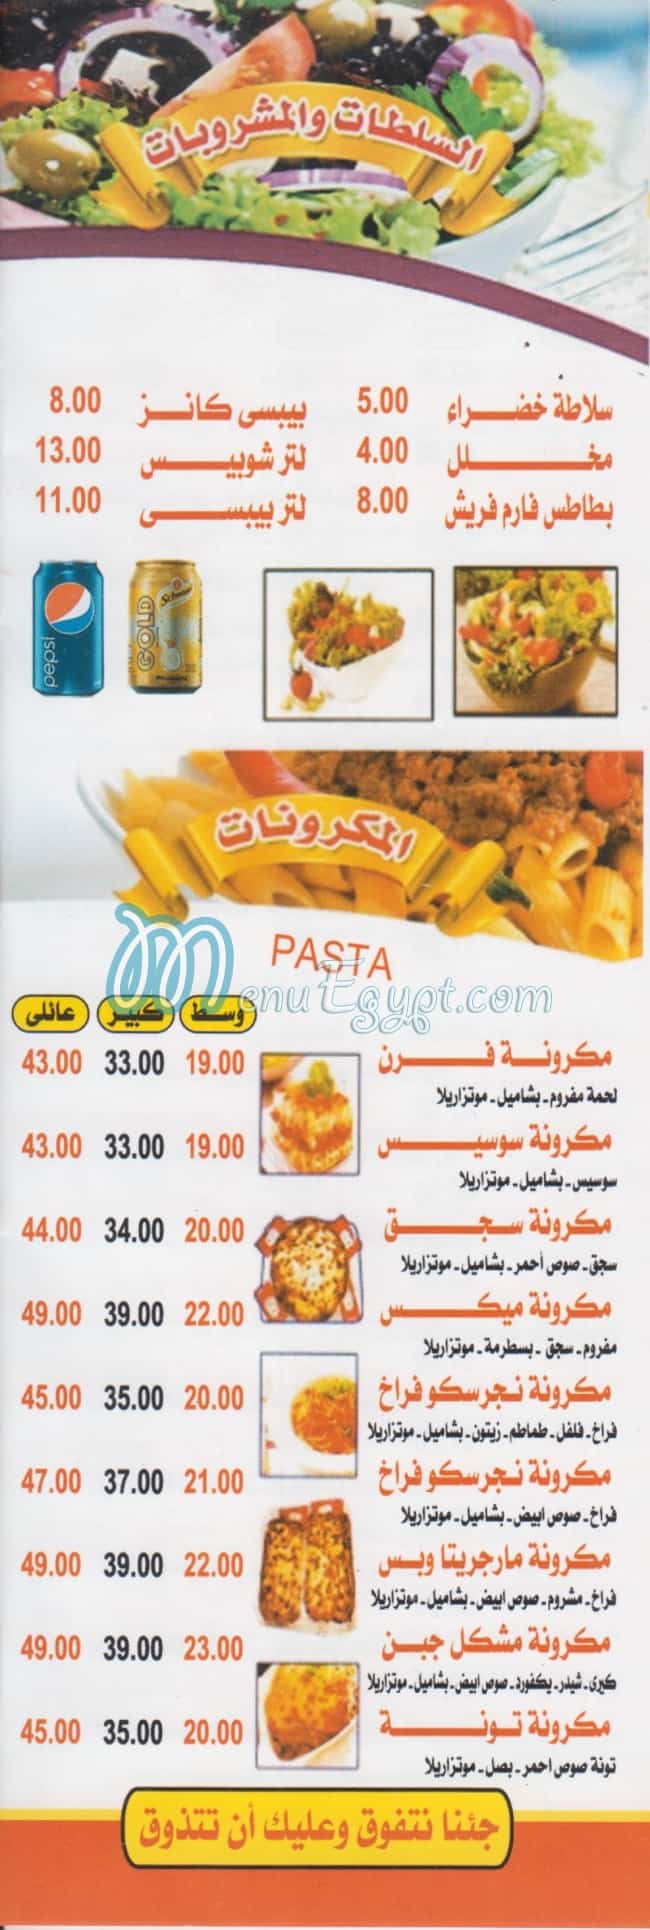 Margrita Dar El salam menu Egypt 1